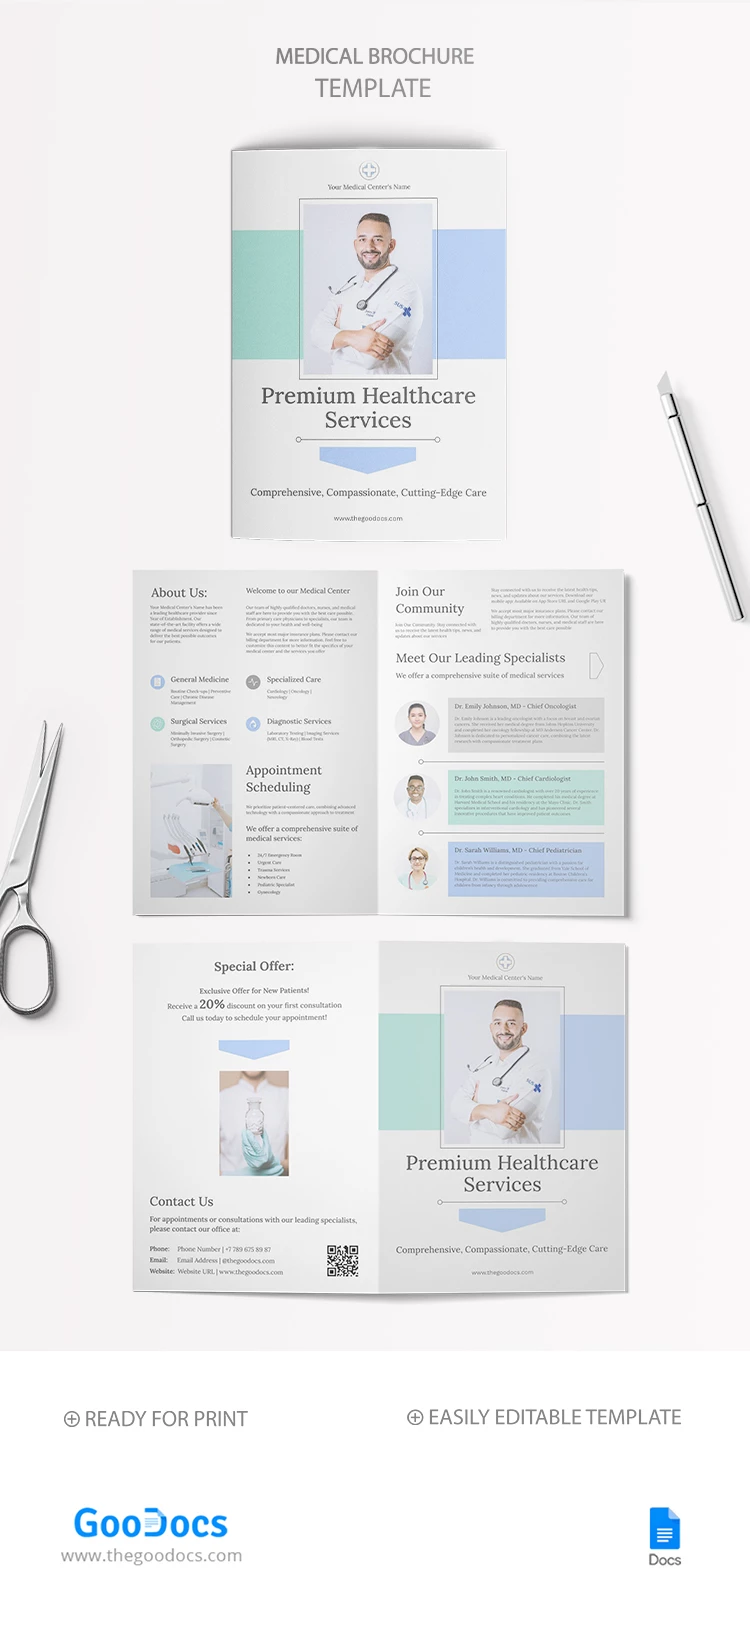 Zweiseitige Broschüre für medizinische Dienstleistungen - free Google Docs Template - 10068740